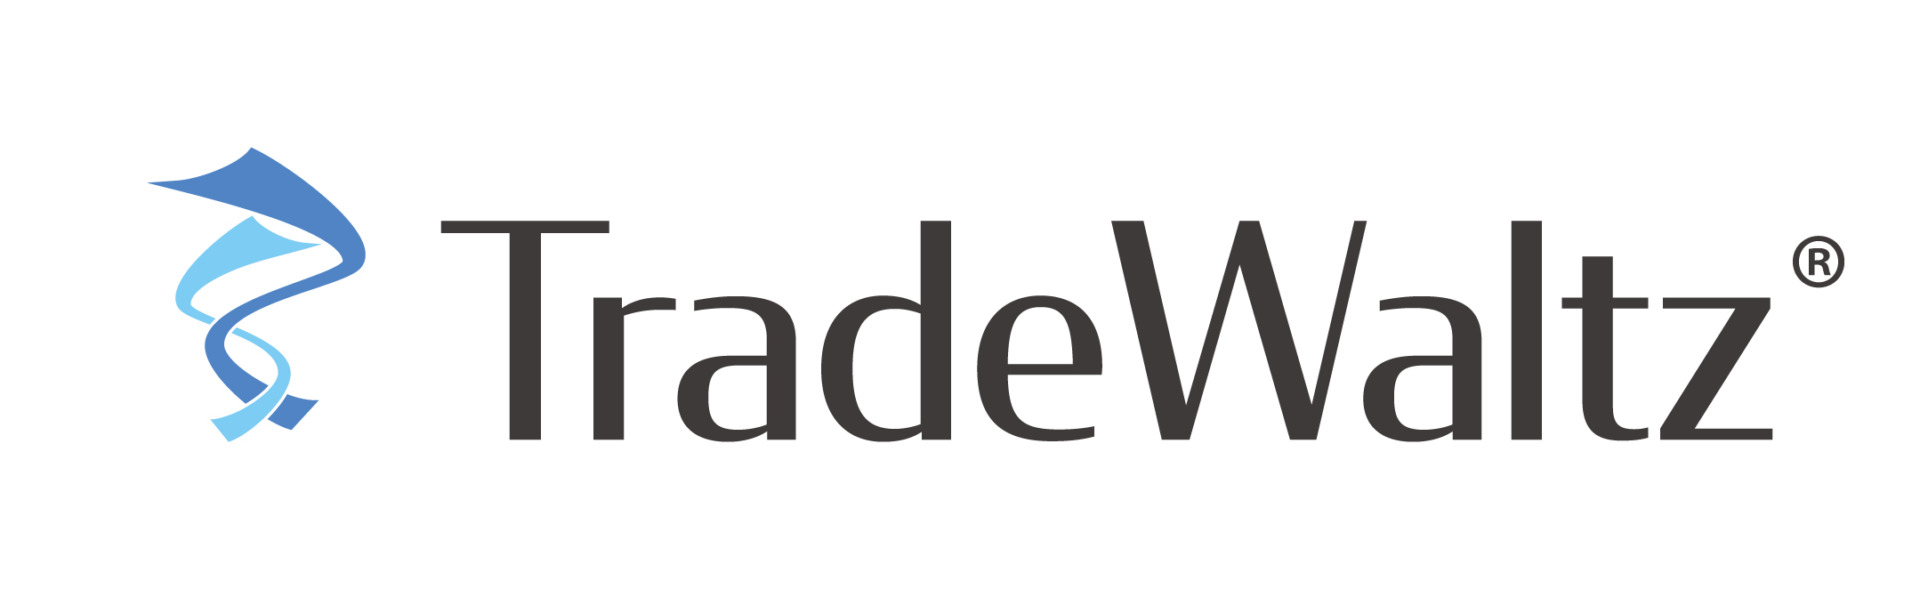 トレードワルツも参画する「貿易手続きデジタル化」の官民検討会が日経に掲載されました